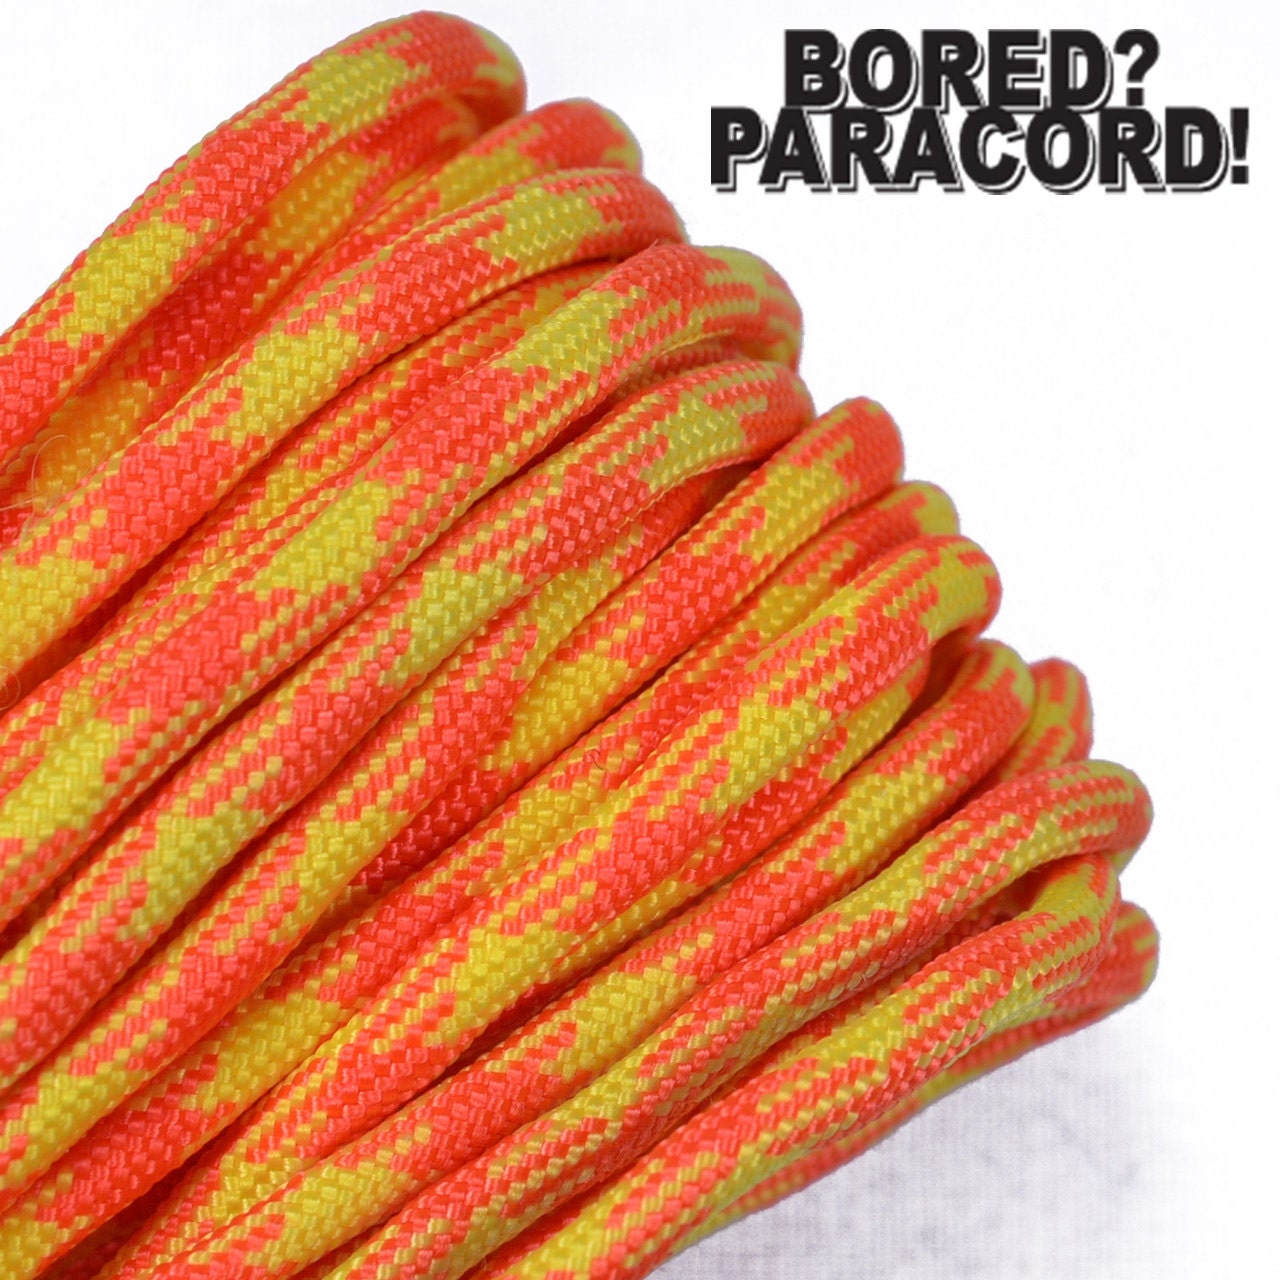 Neon Orange Micro Cord - 100 Pound - 125 Feet - Great Paracord Accessory Cord